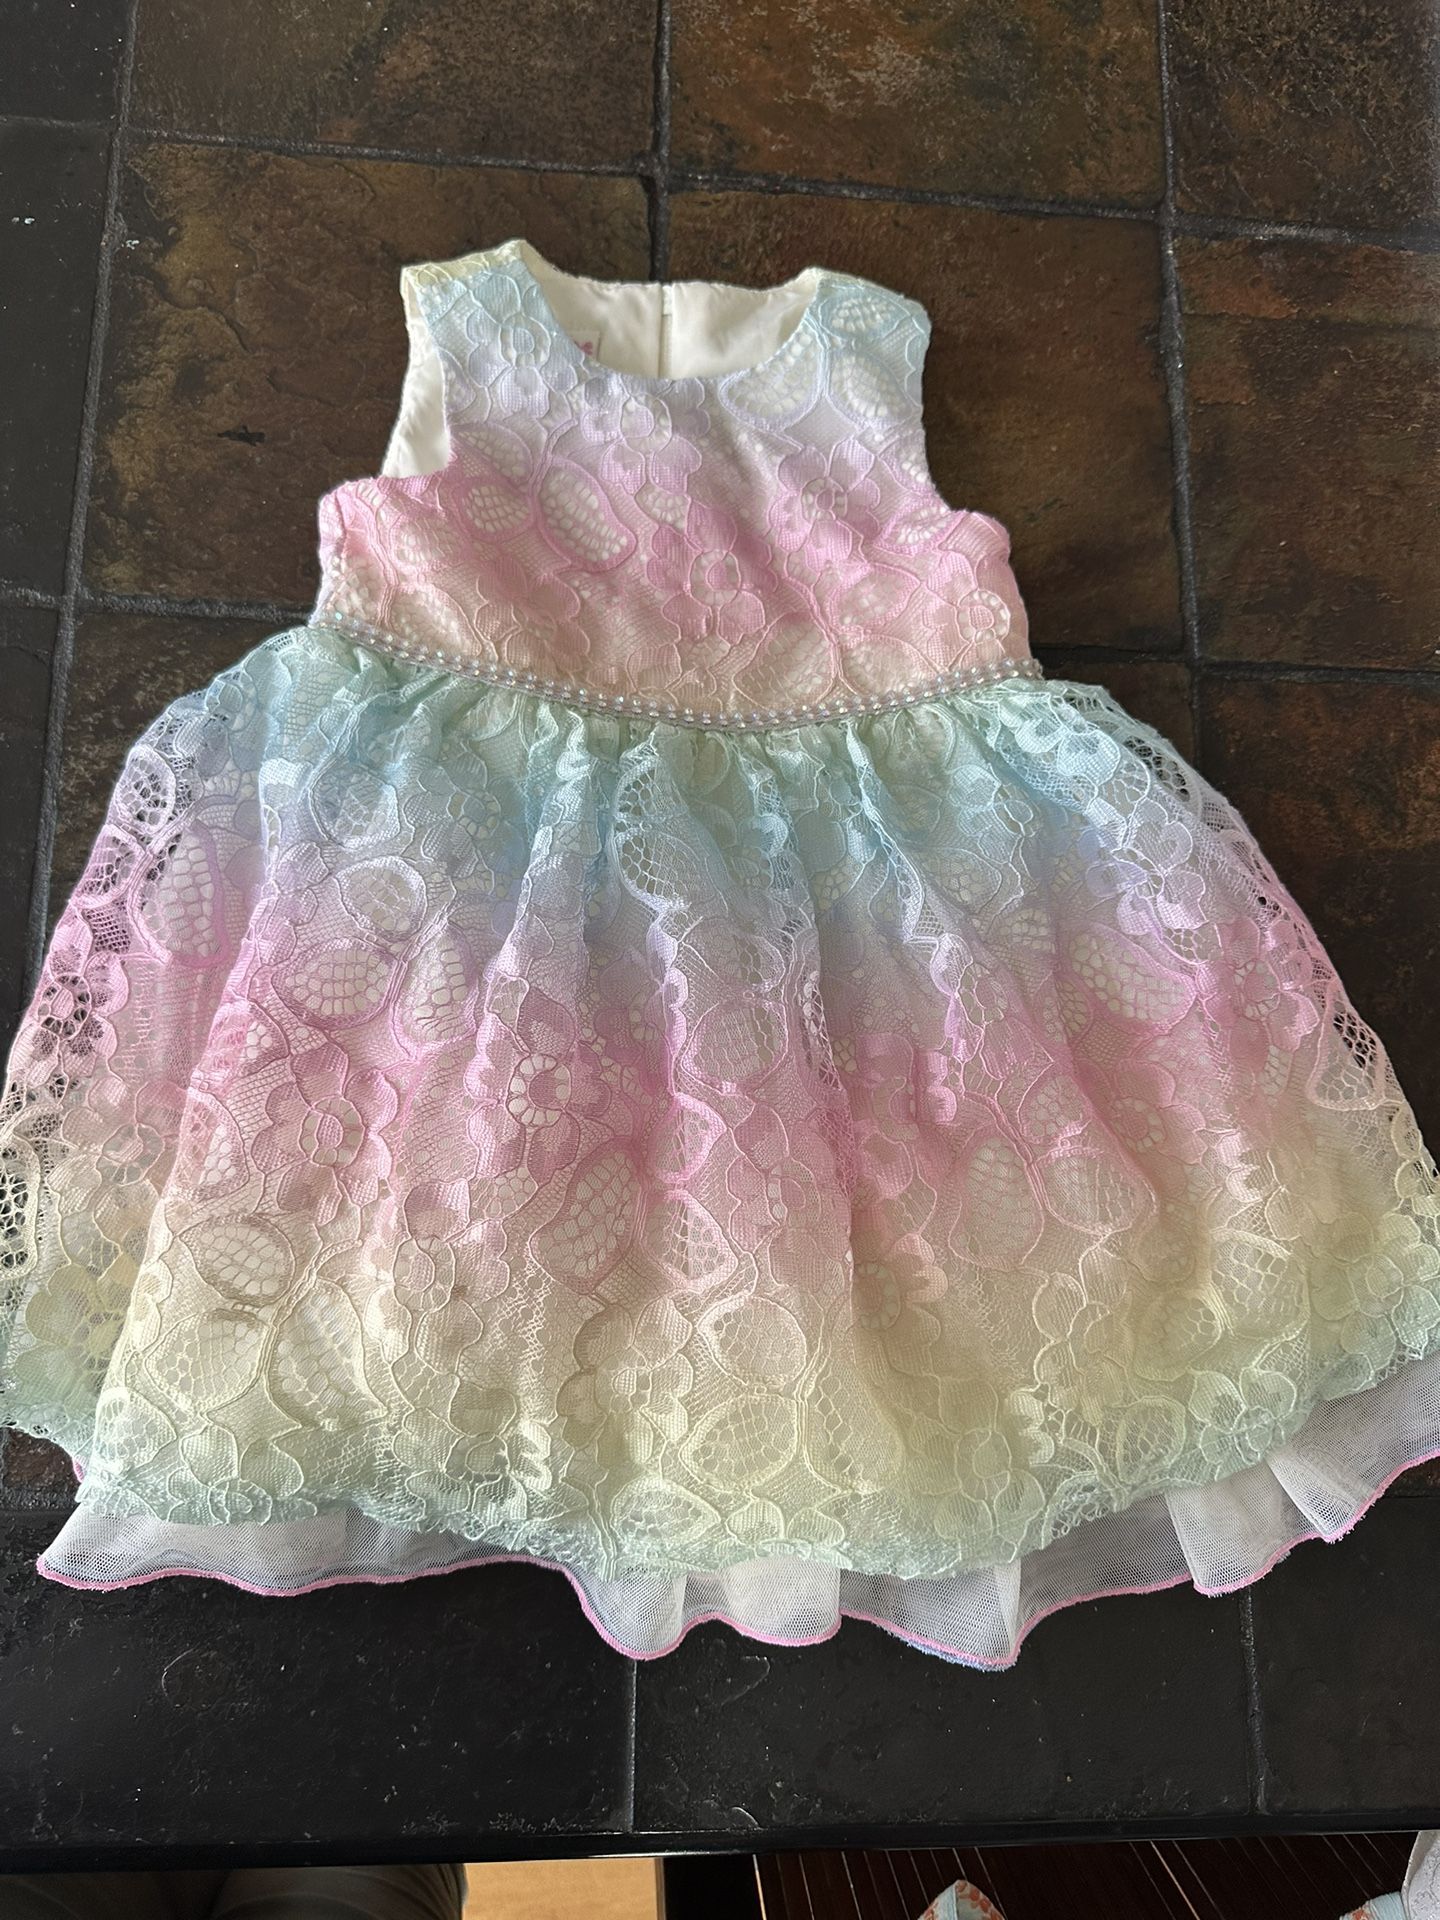 Bonnie Jean Baby Girls Rainbow Dress Size 18 Months 